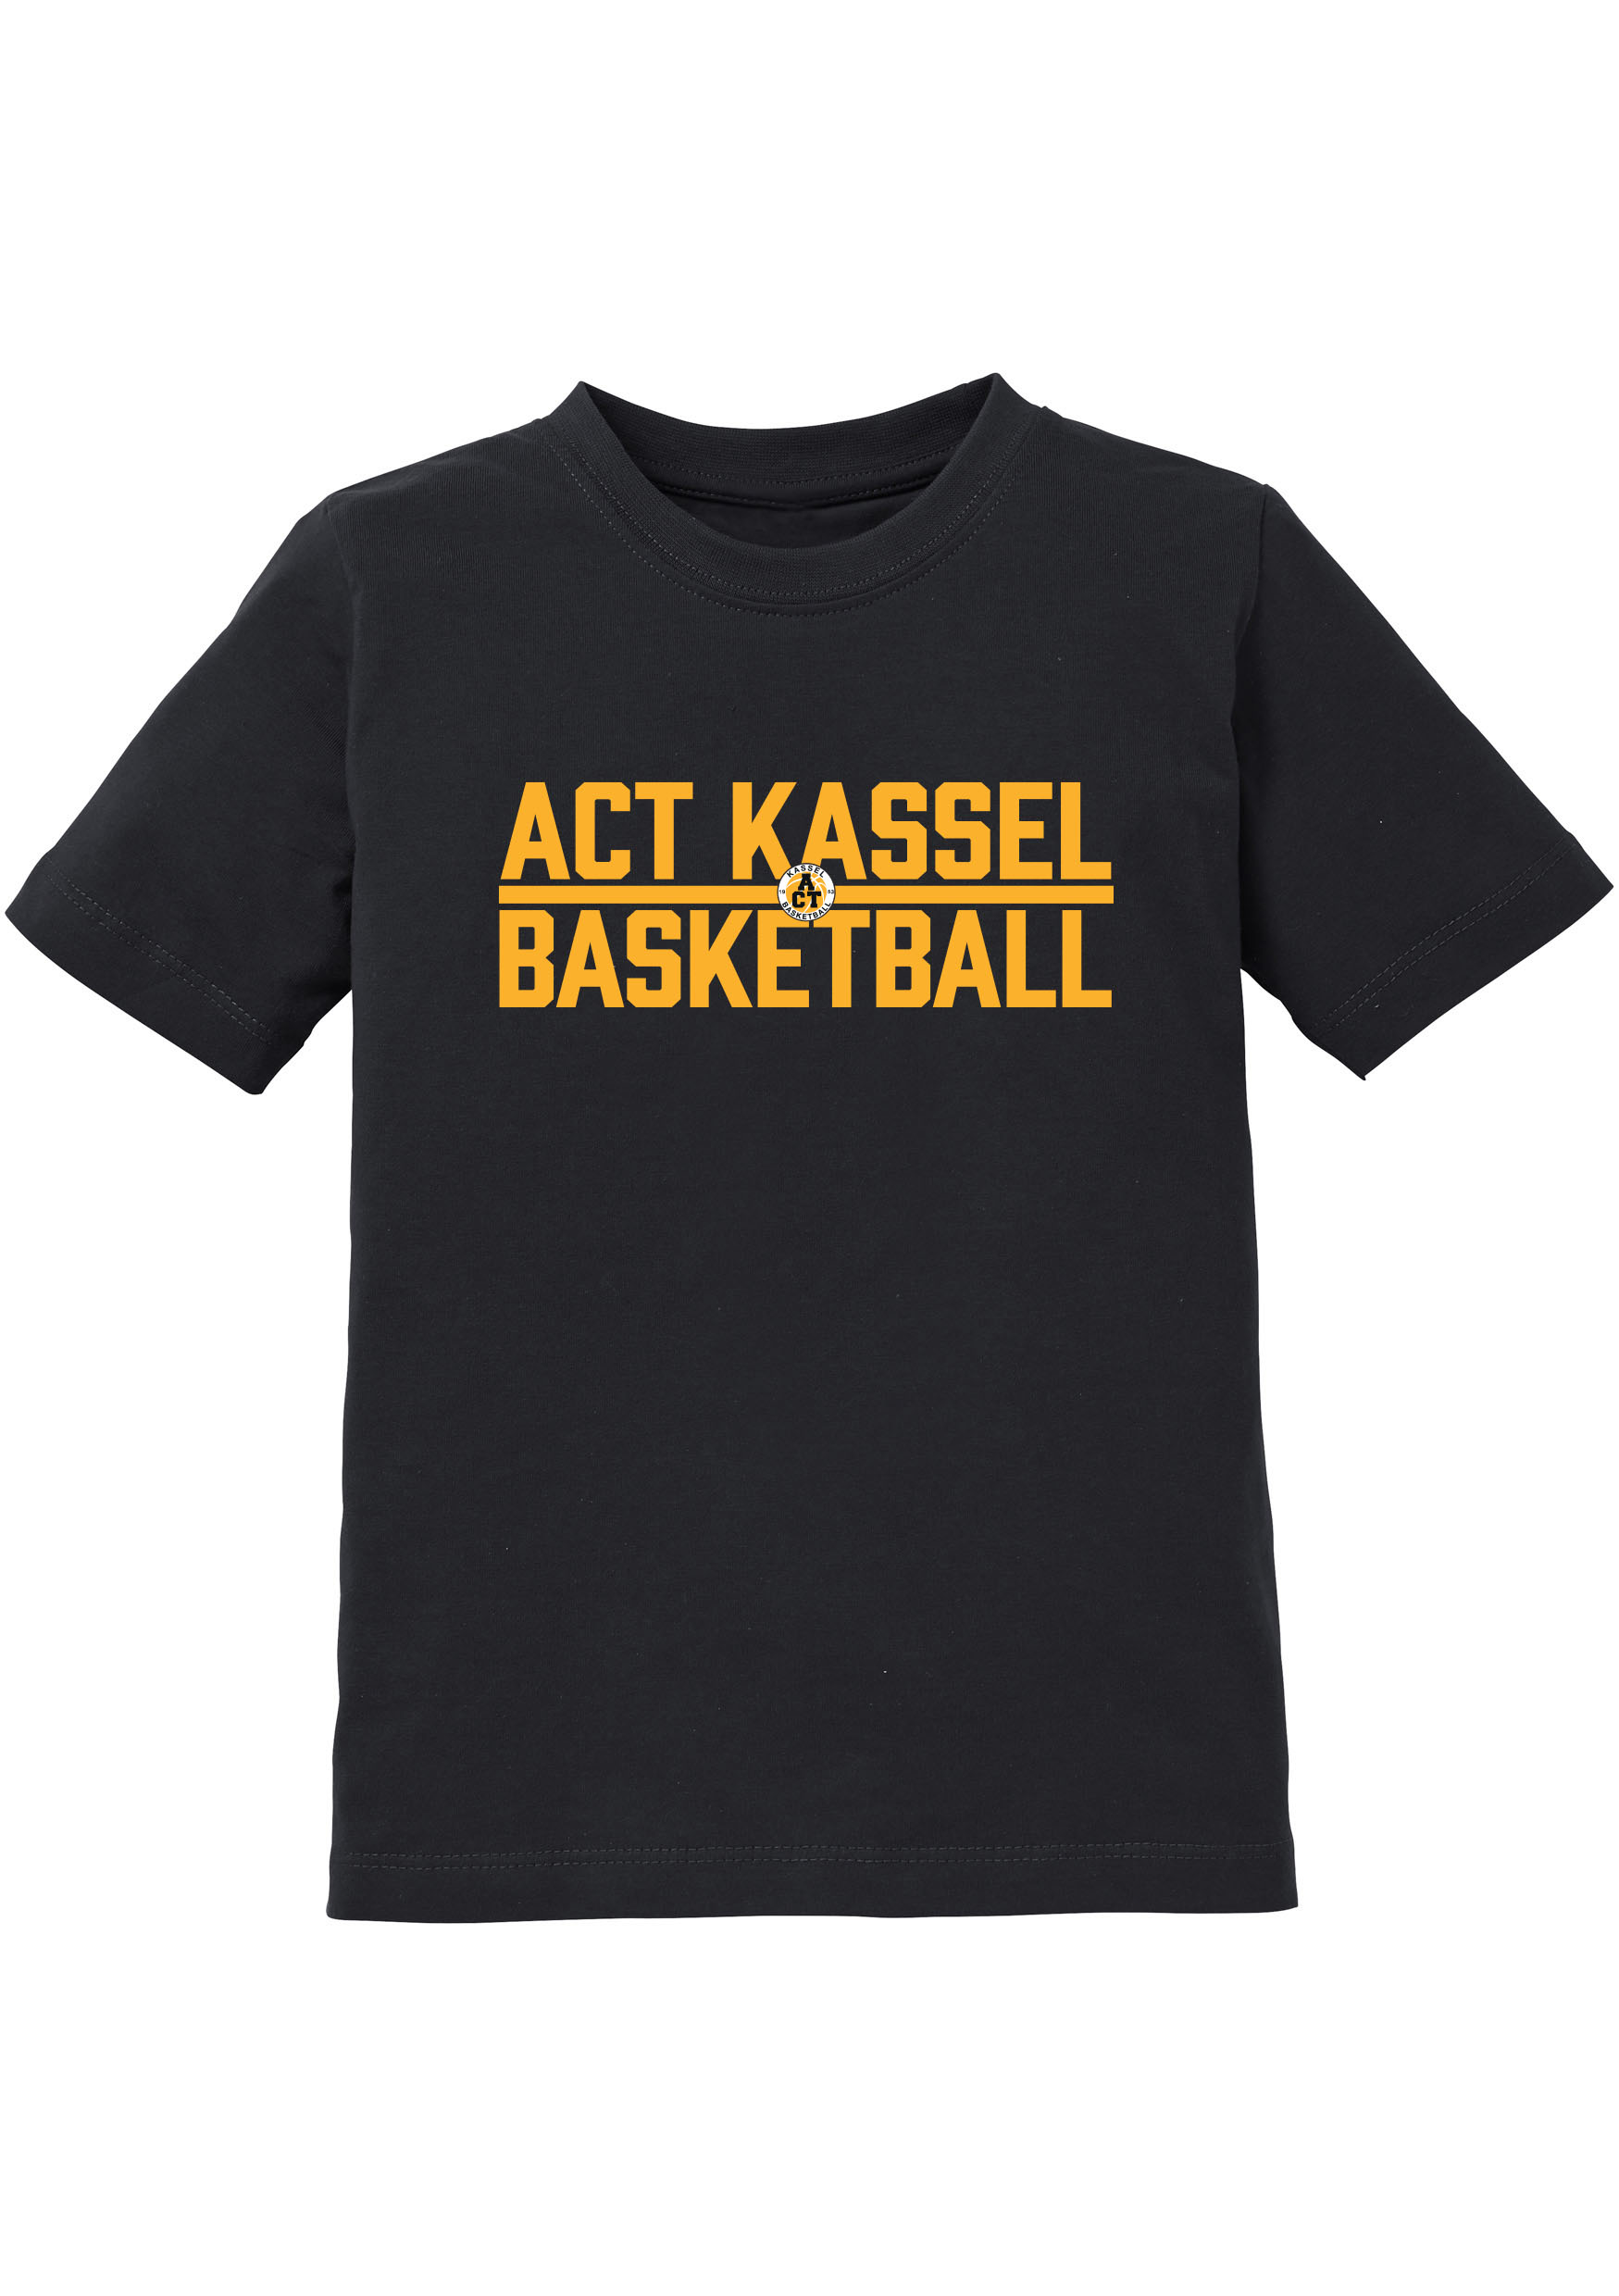 Kassel Basketball T-Shirt Kids